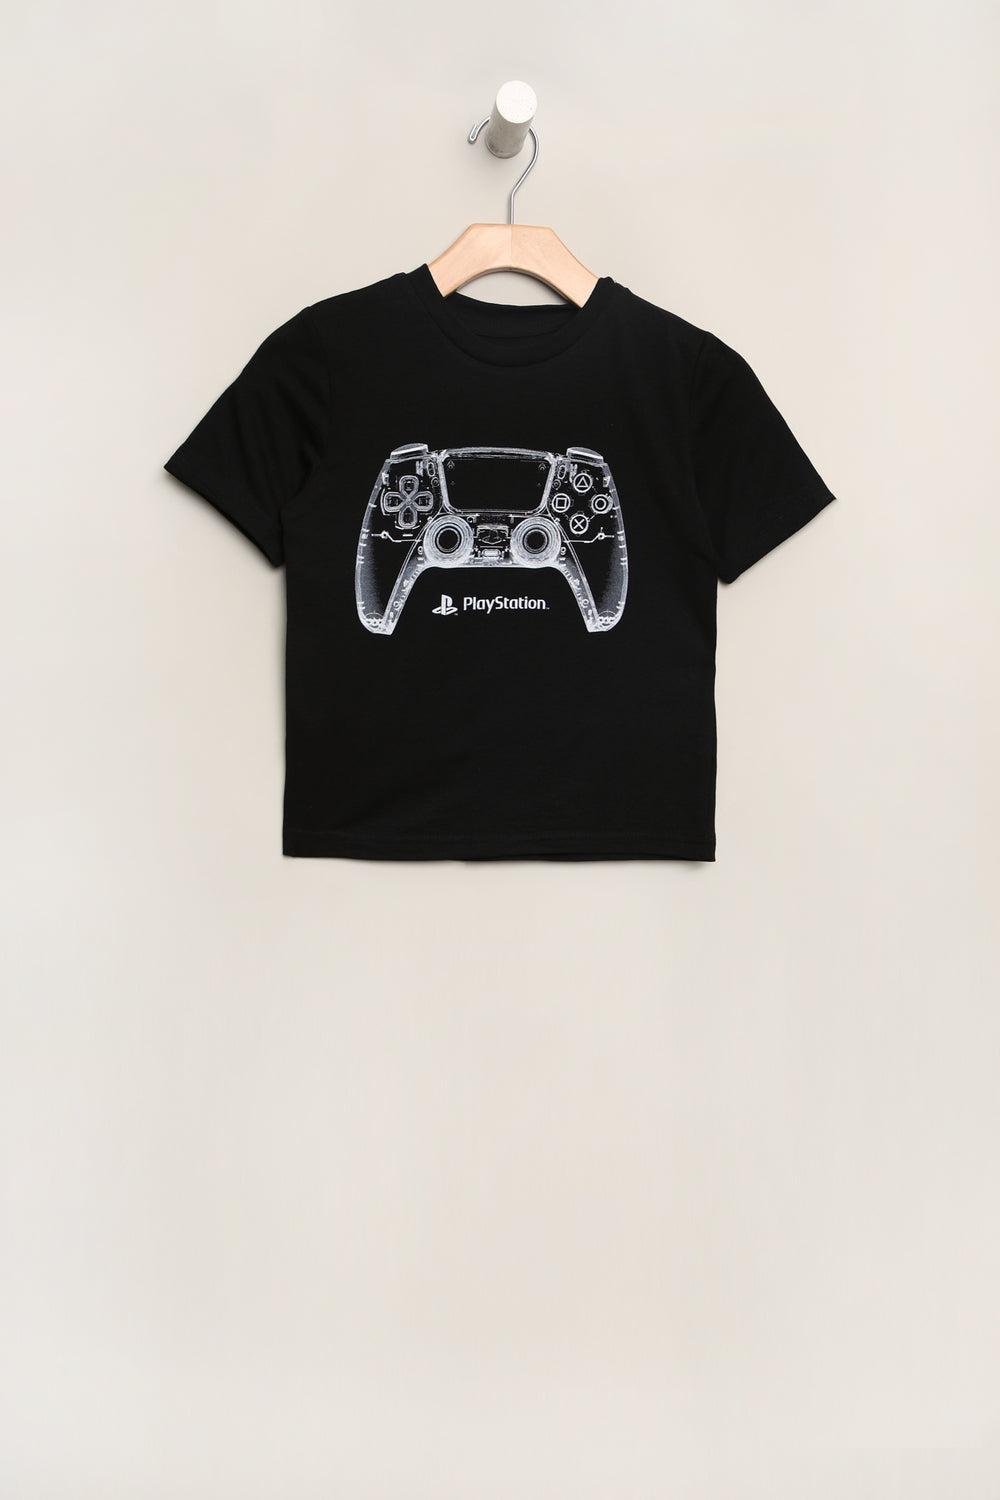 Youth Playstation T-Shirt Youth Playstation T-Shirt